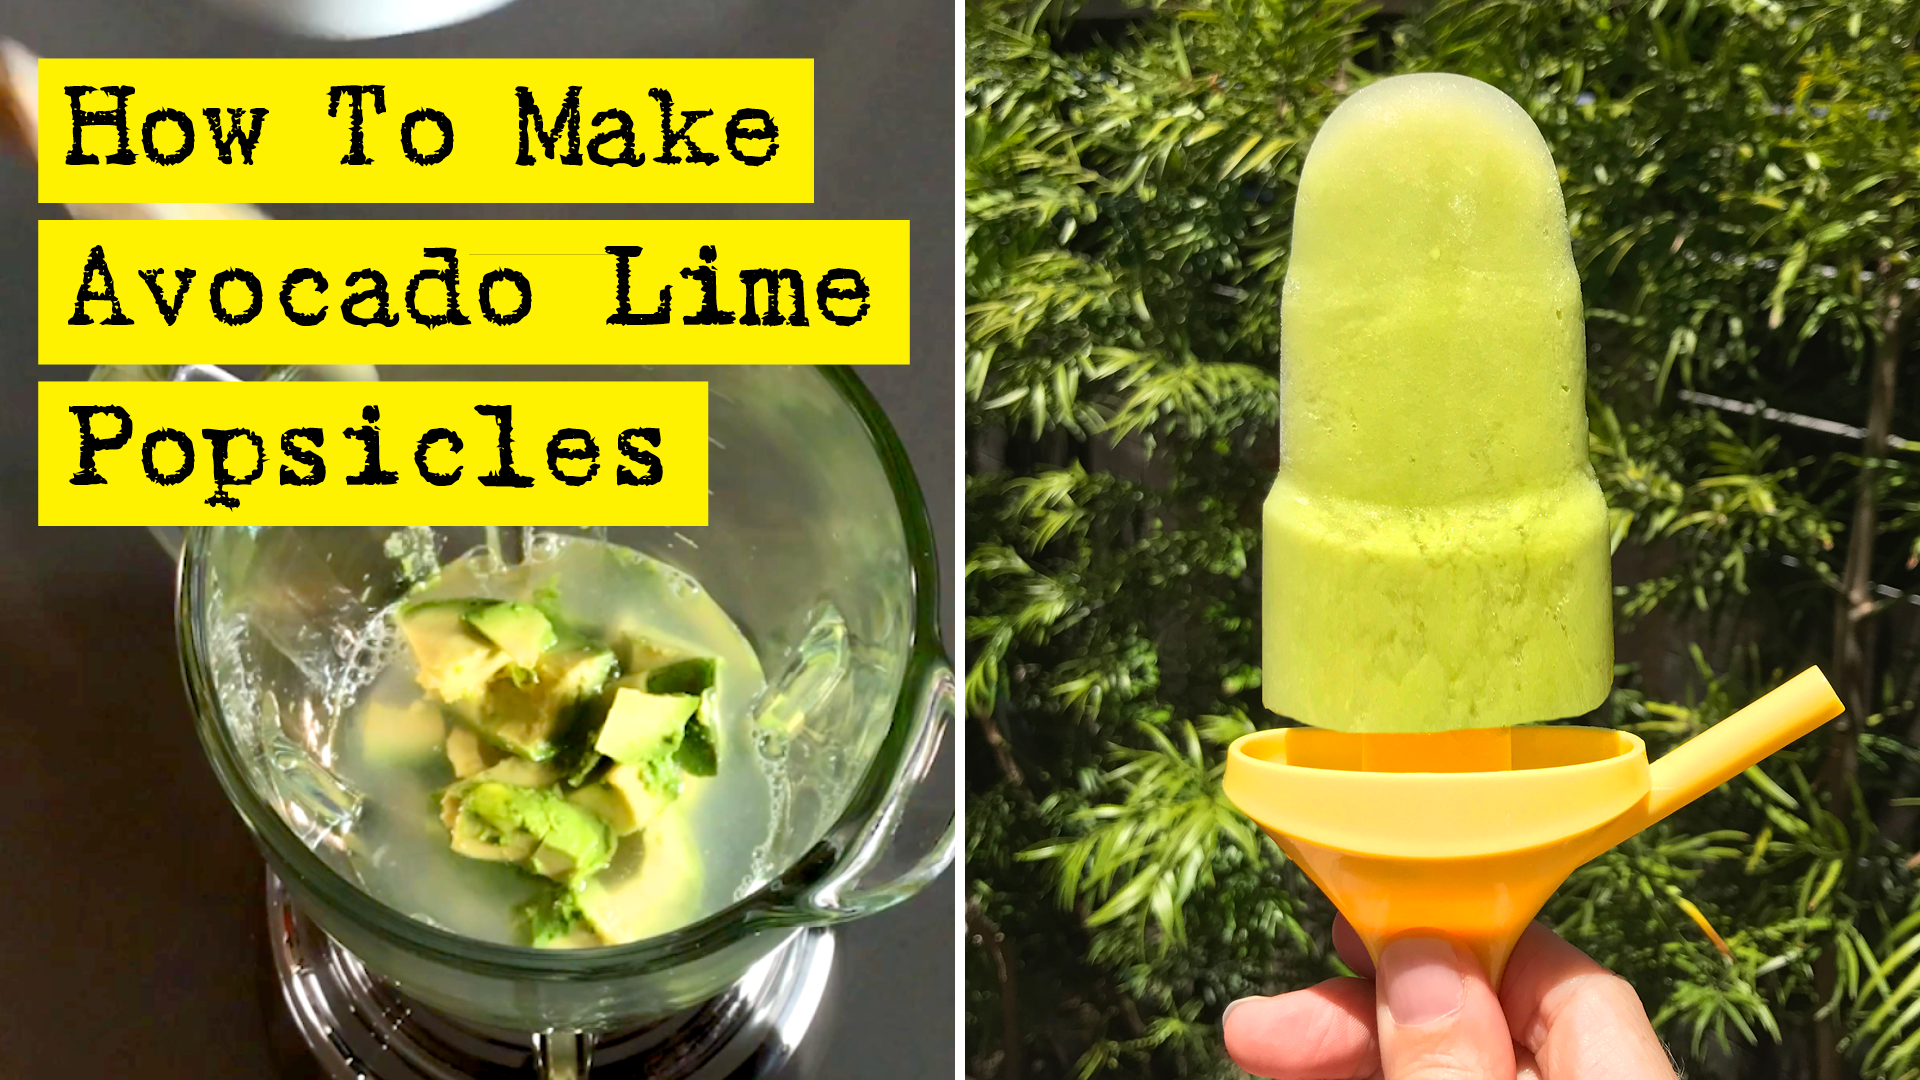 How To Make Avocado Lime Popsicles - by DIY Presto!